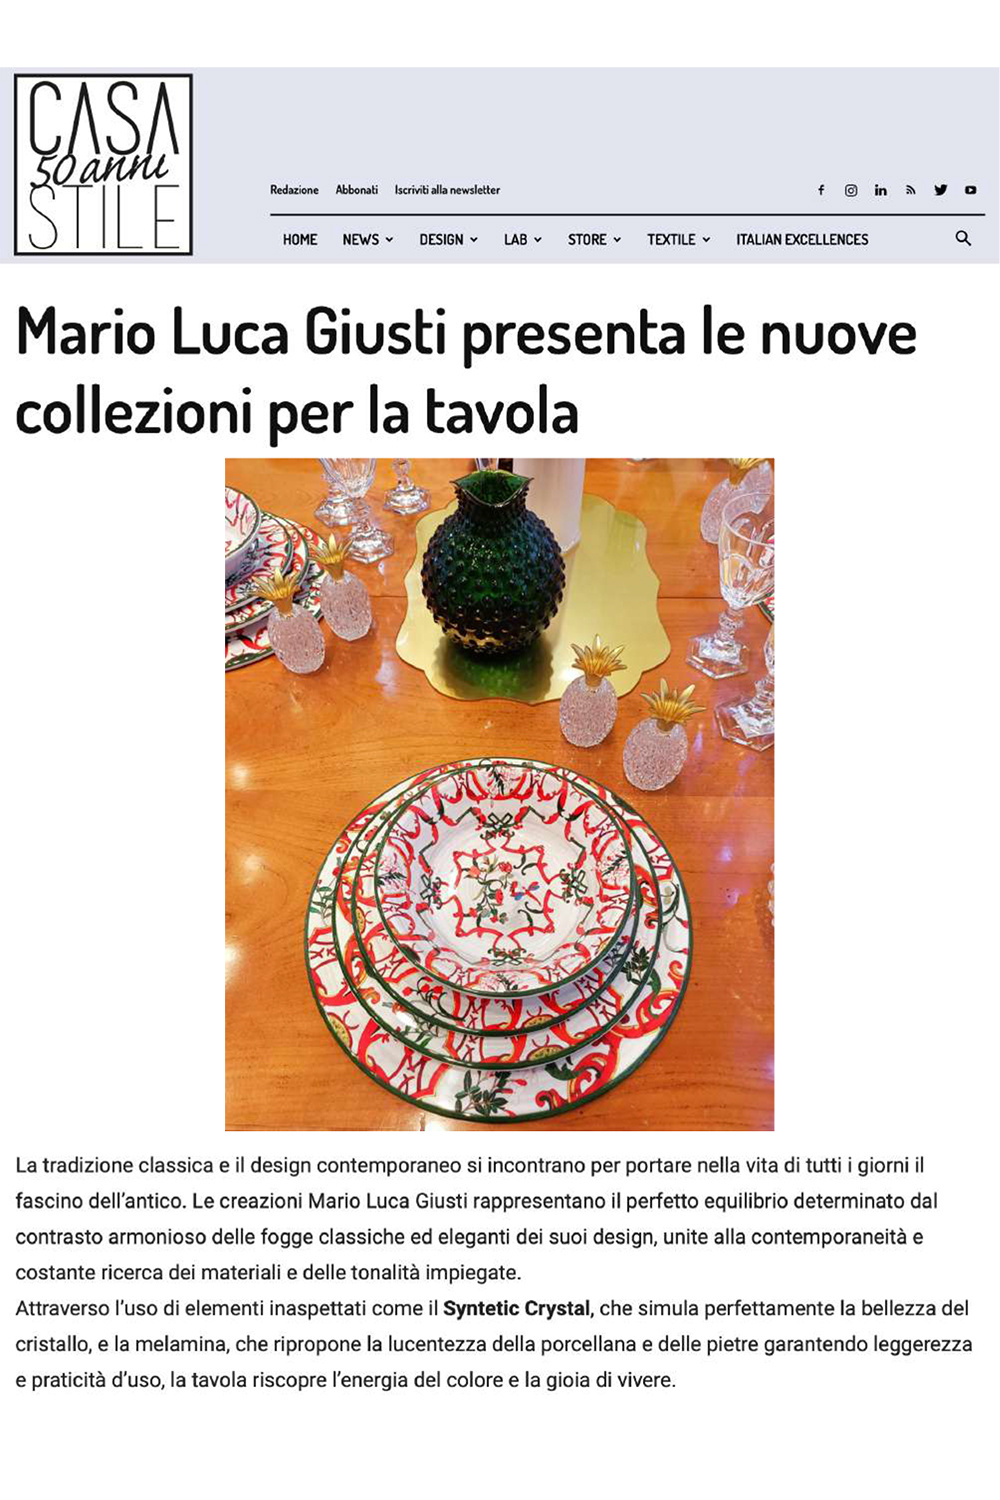 Mario Luca Giusti presenta le nuove collezioni per la tavola